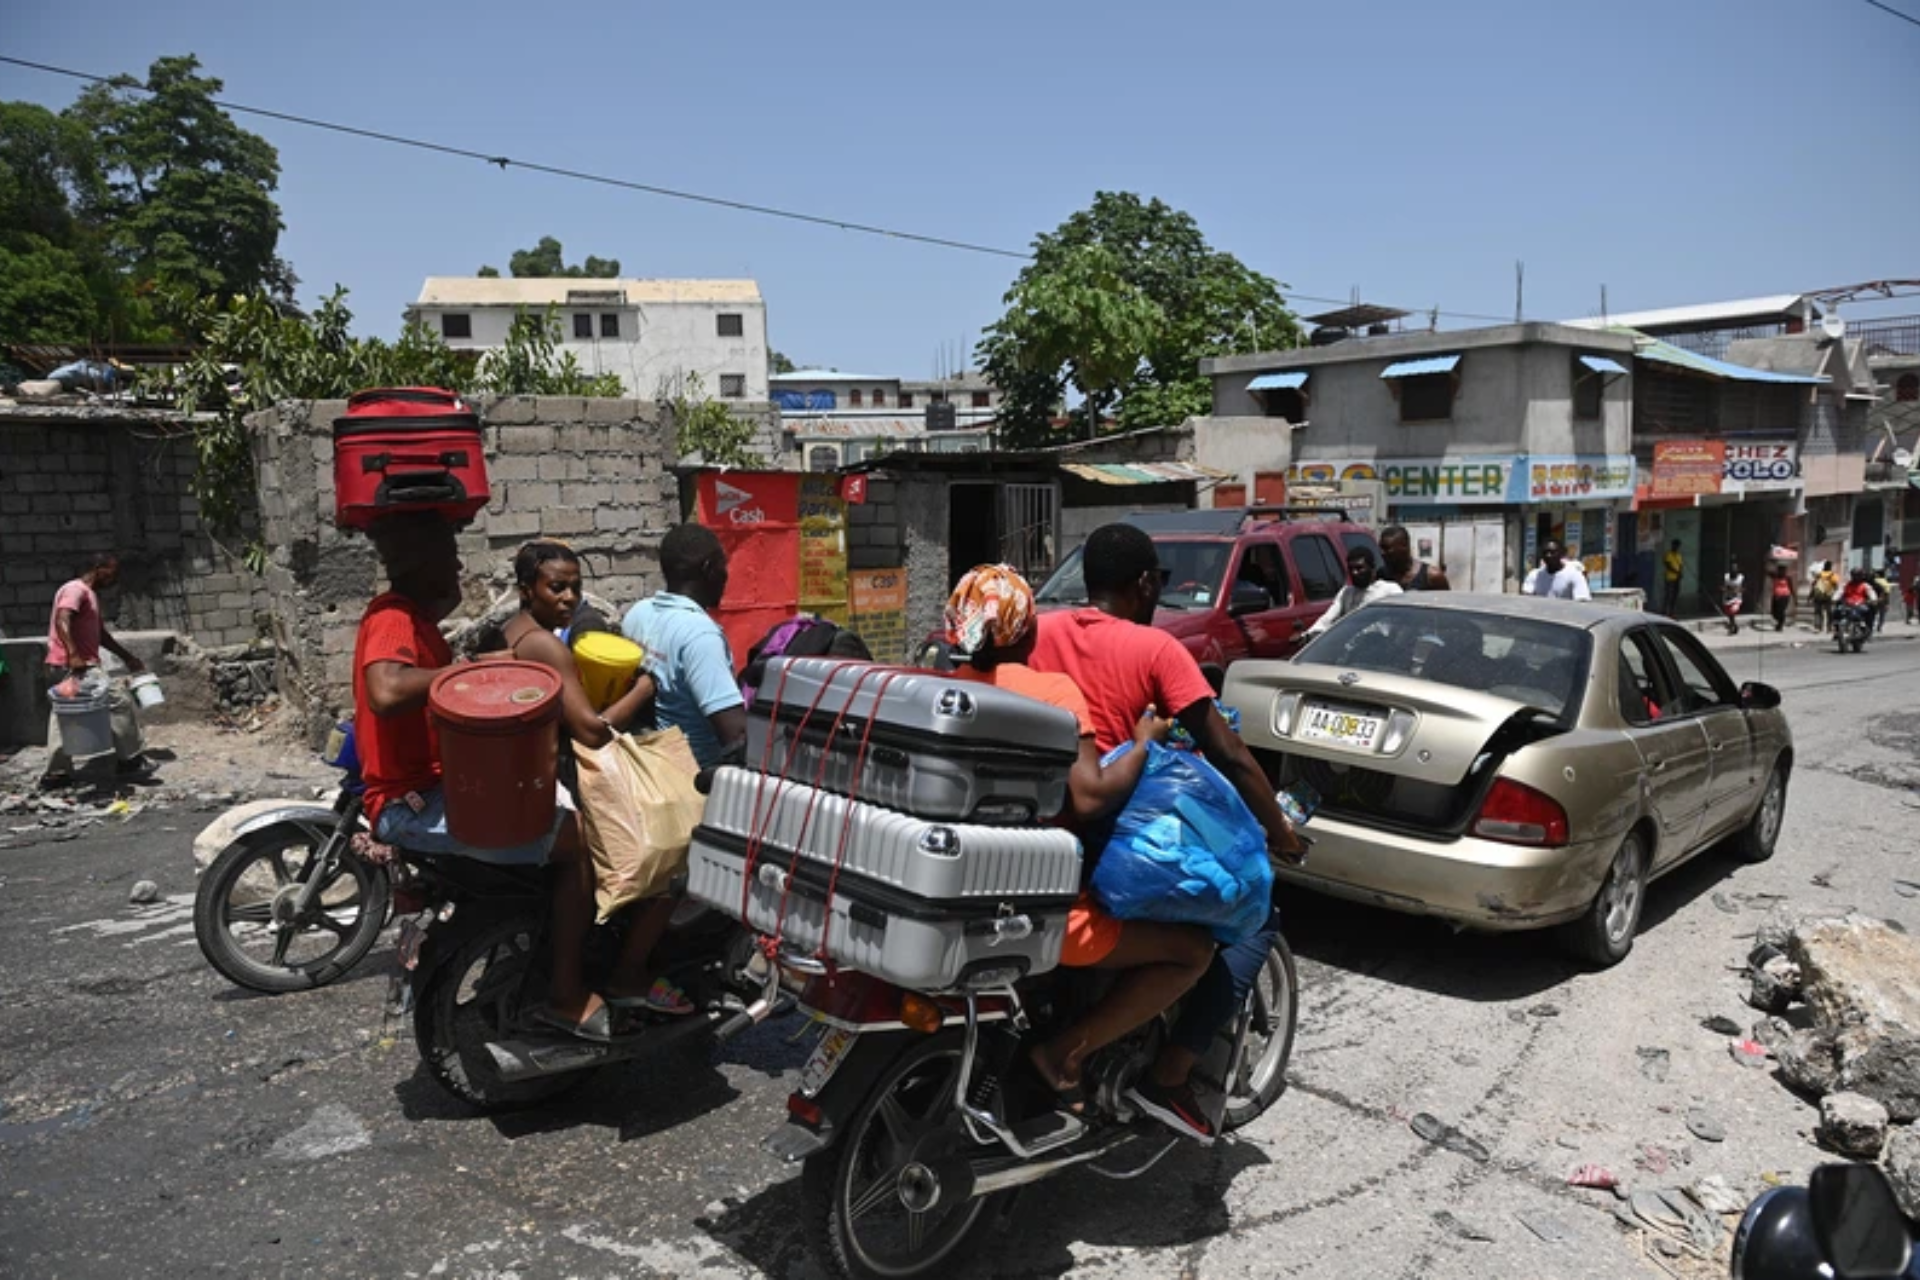 Haiti gang violence